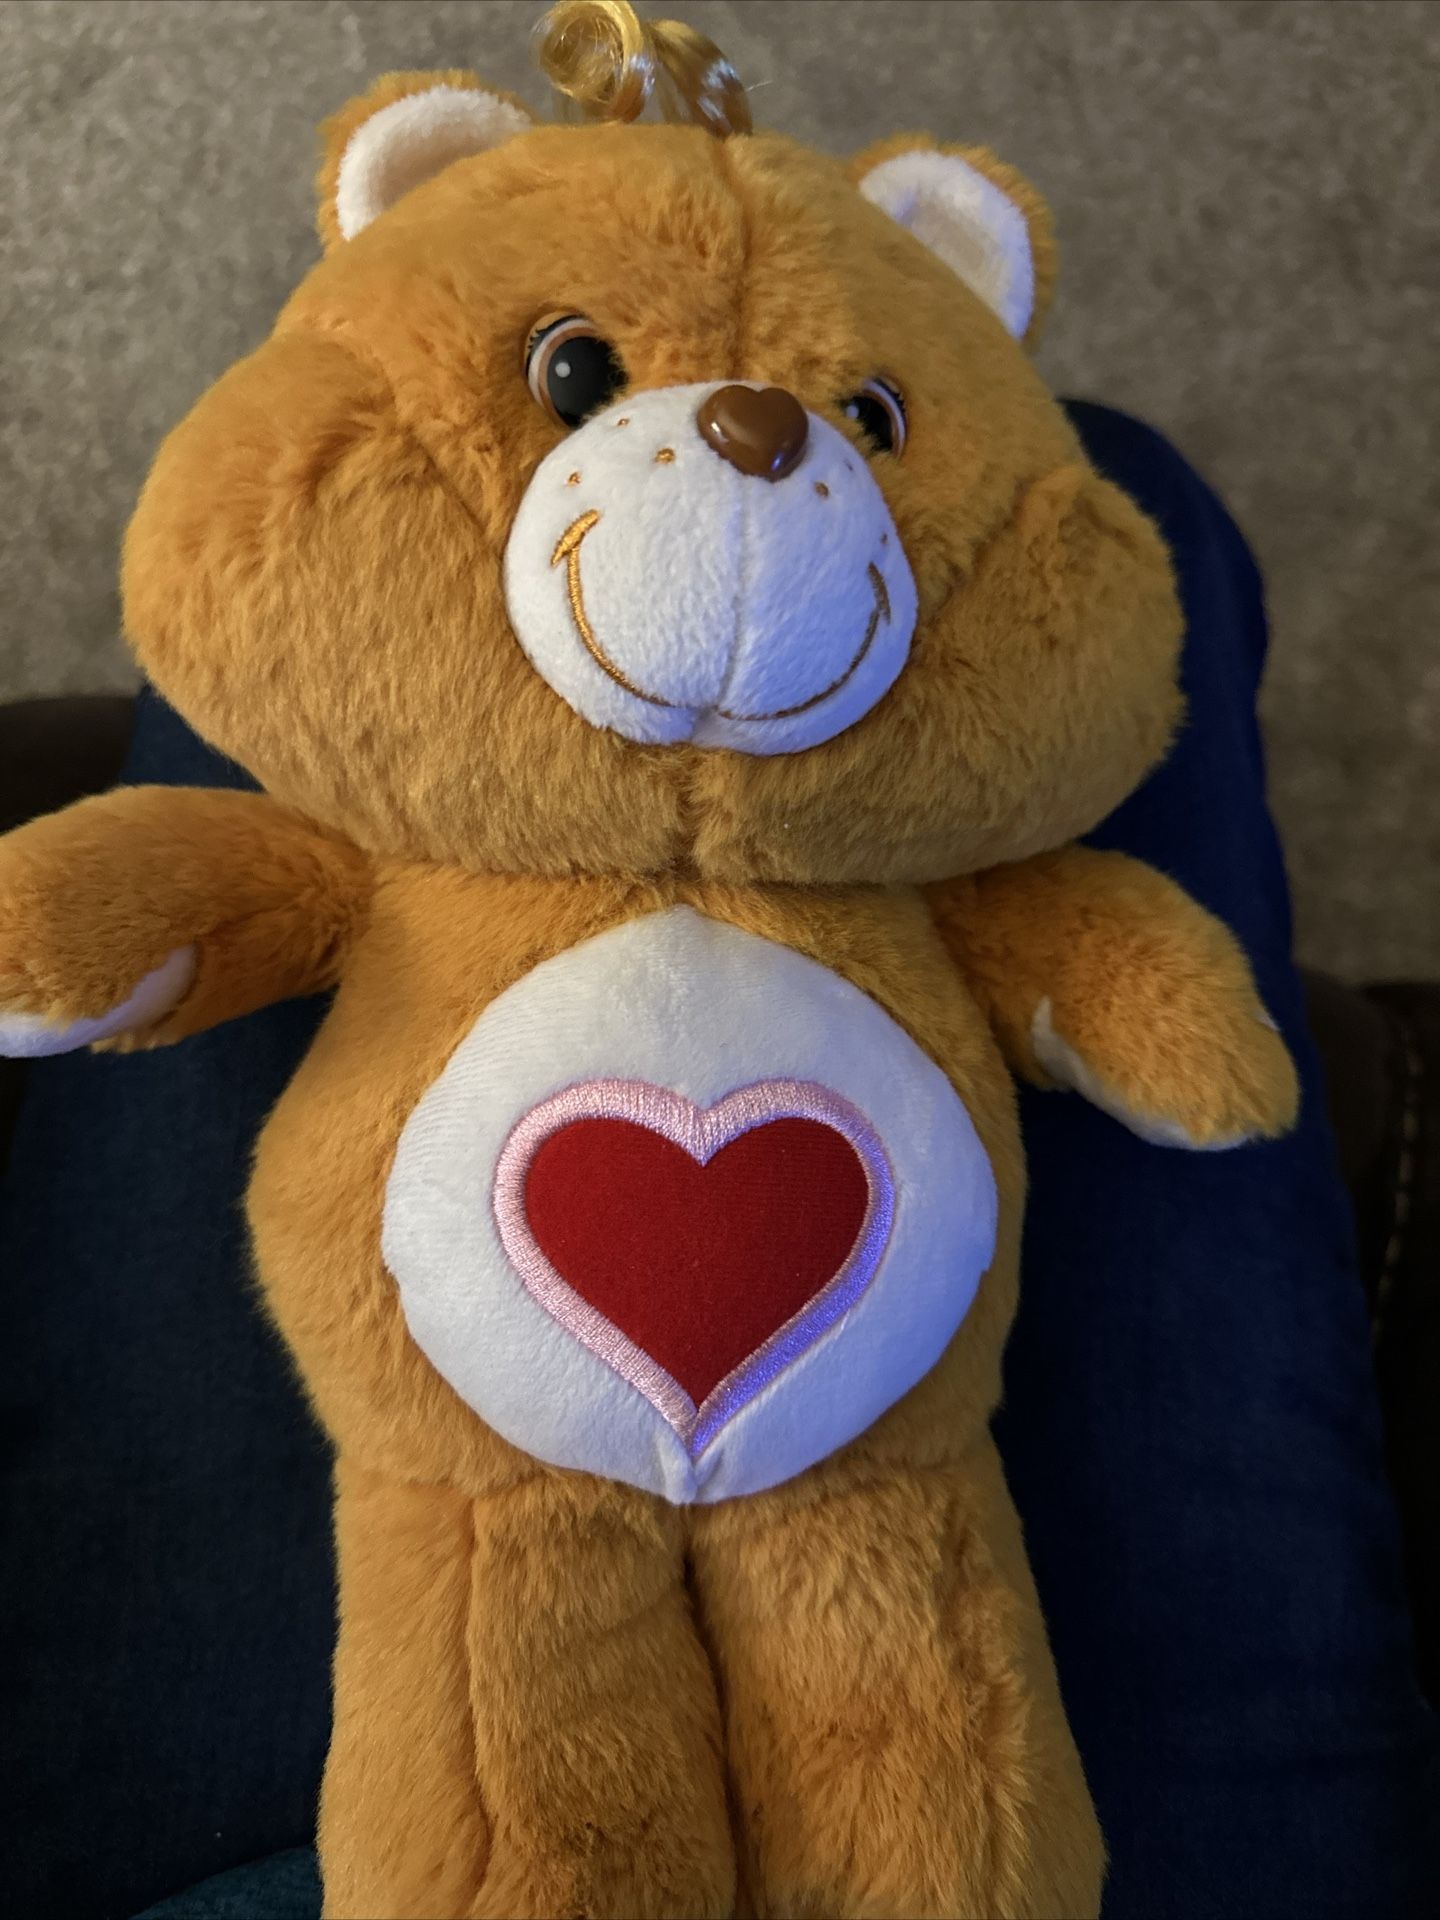  2019 Tenderheart Care Bear Plush  13 Inches Tall